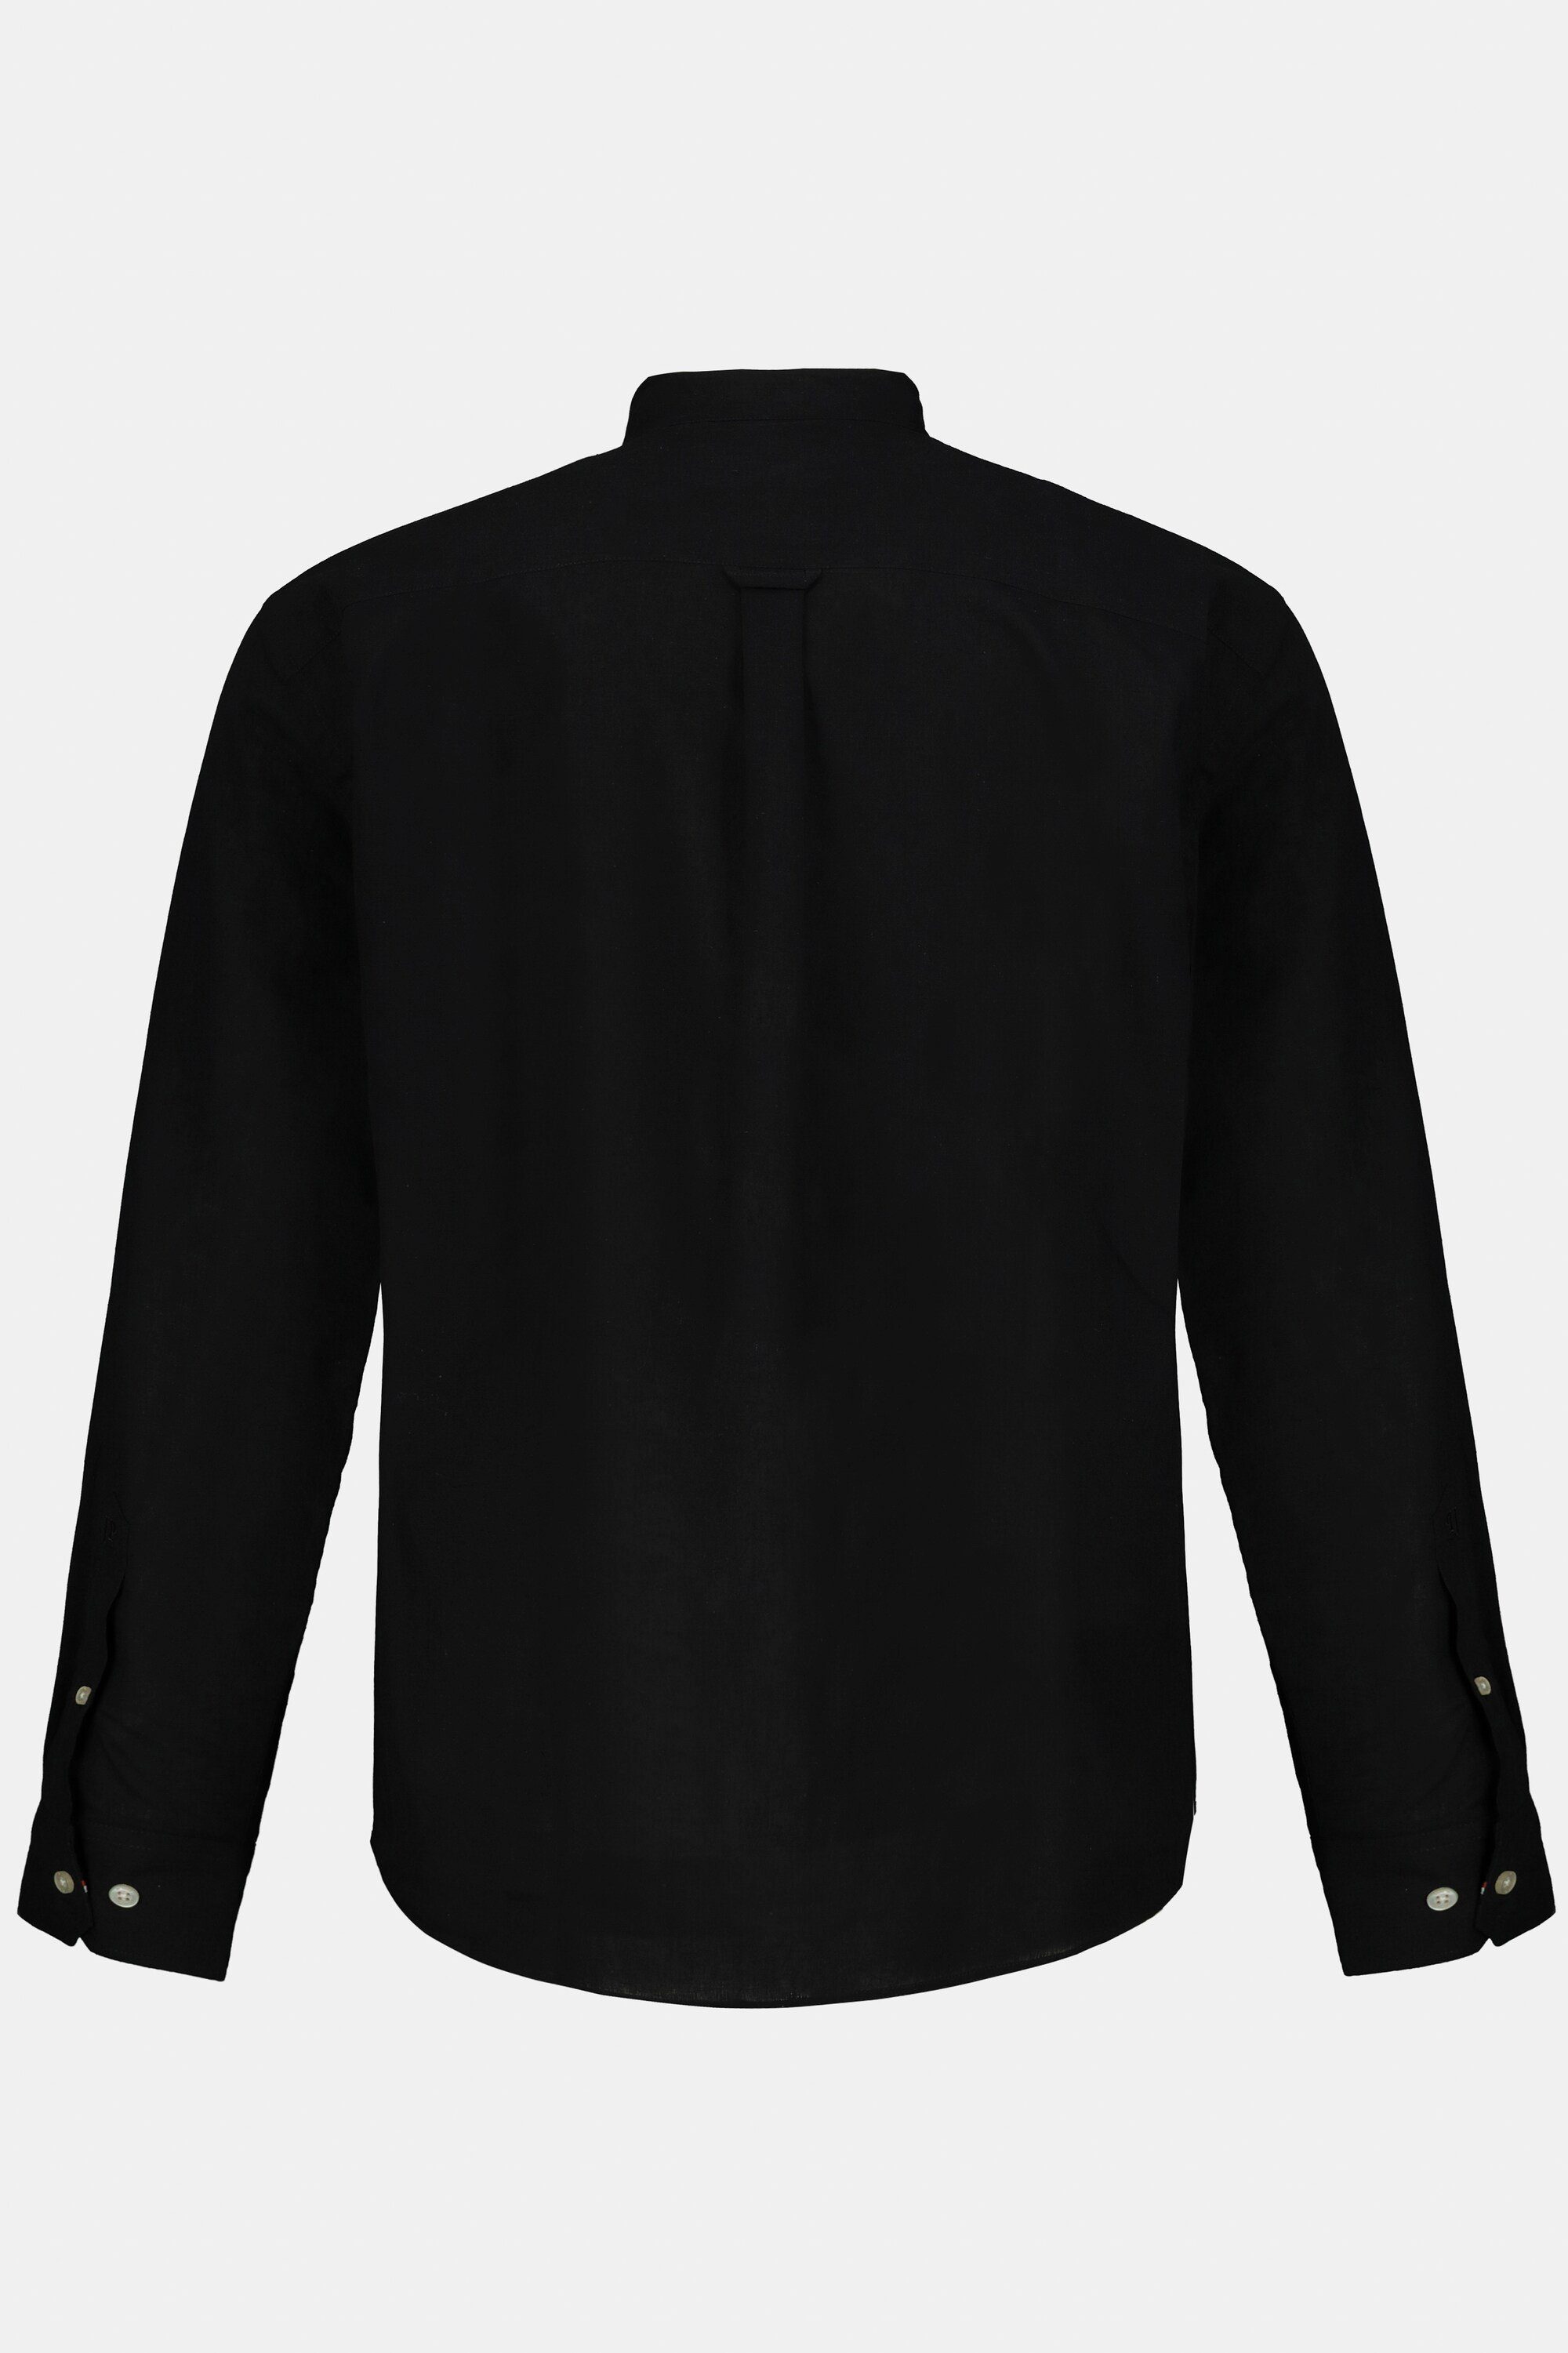 Langarm Fit Stehkragen JP1880 Modern schwarz Leinenmixhemd Businesshemd